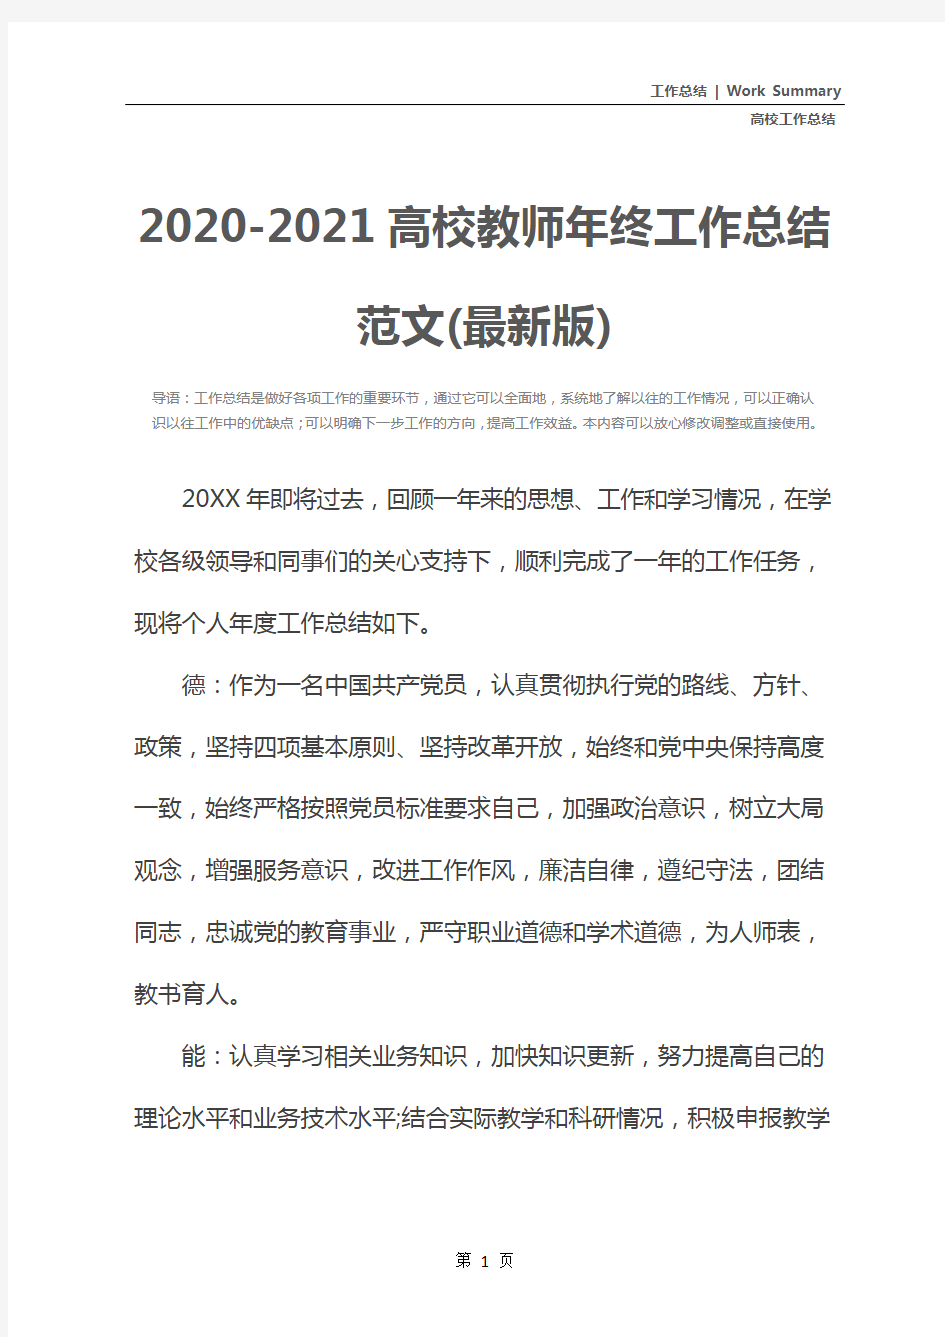 2020-2021高校教师年终工作总结范文(最新版)